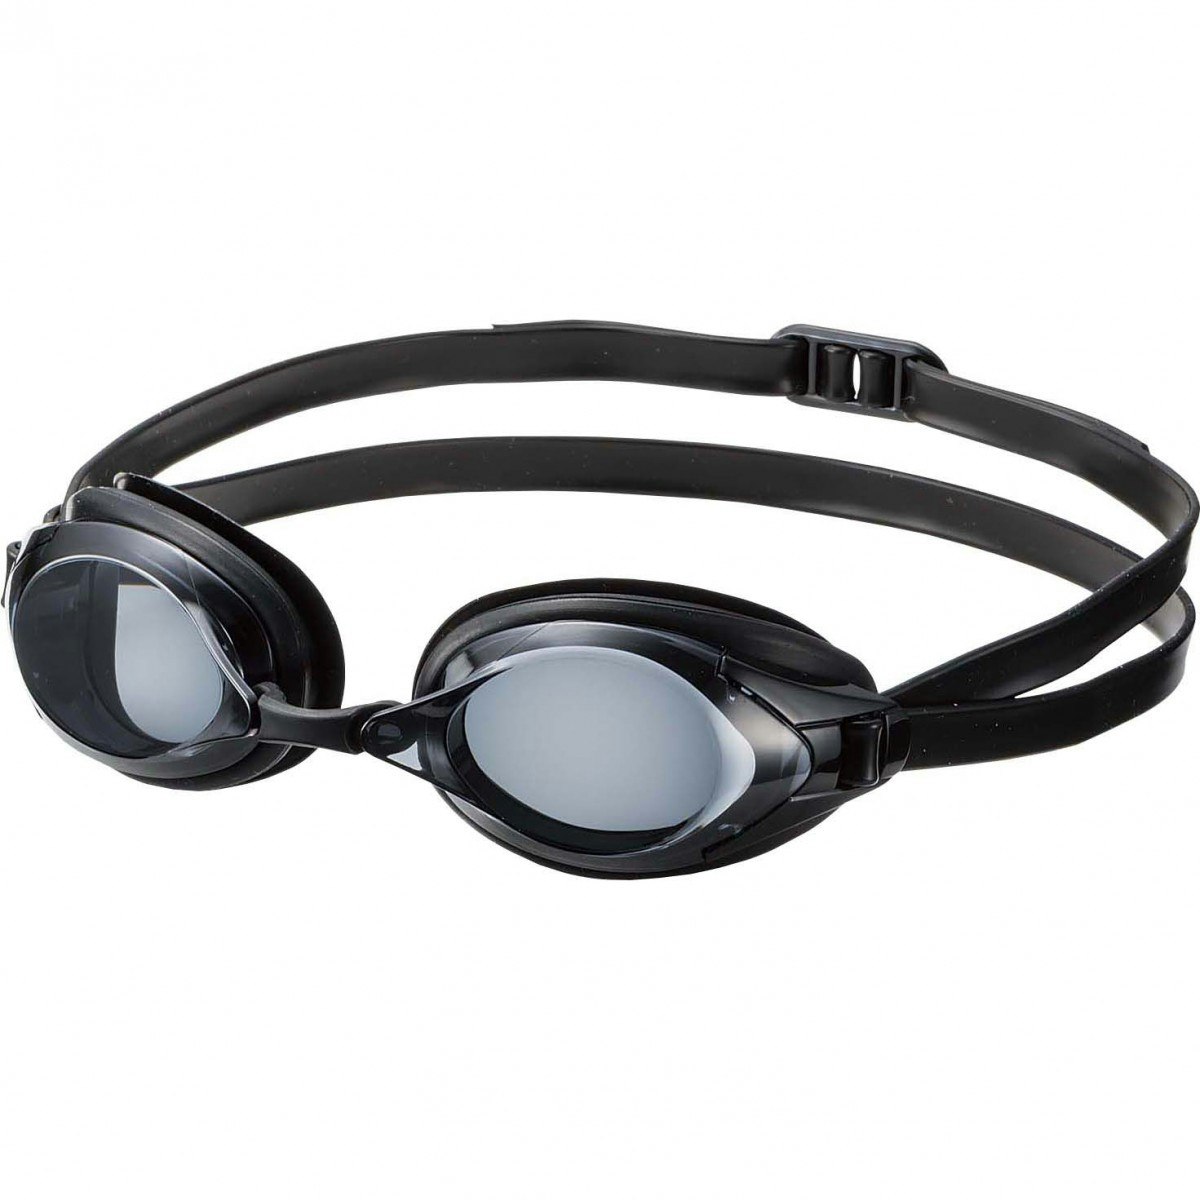 SWANS optiska simglasögon FO-2-OP svarta - för långsynta